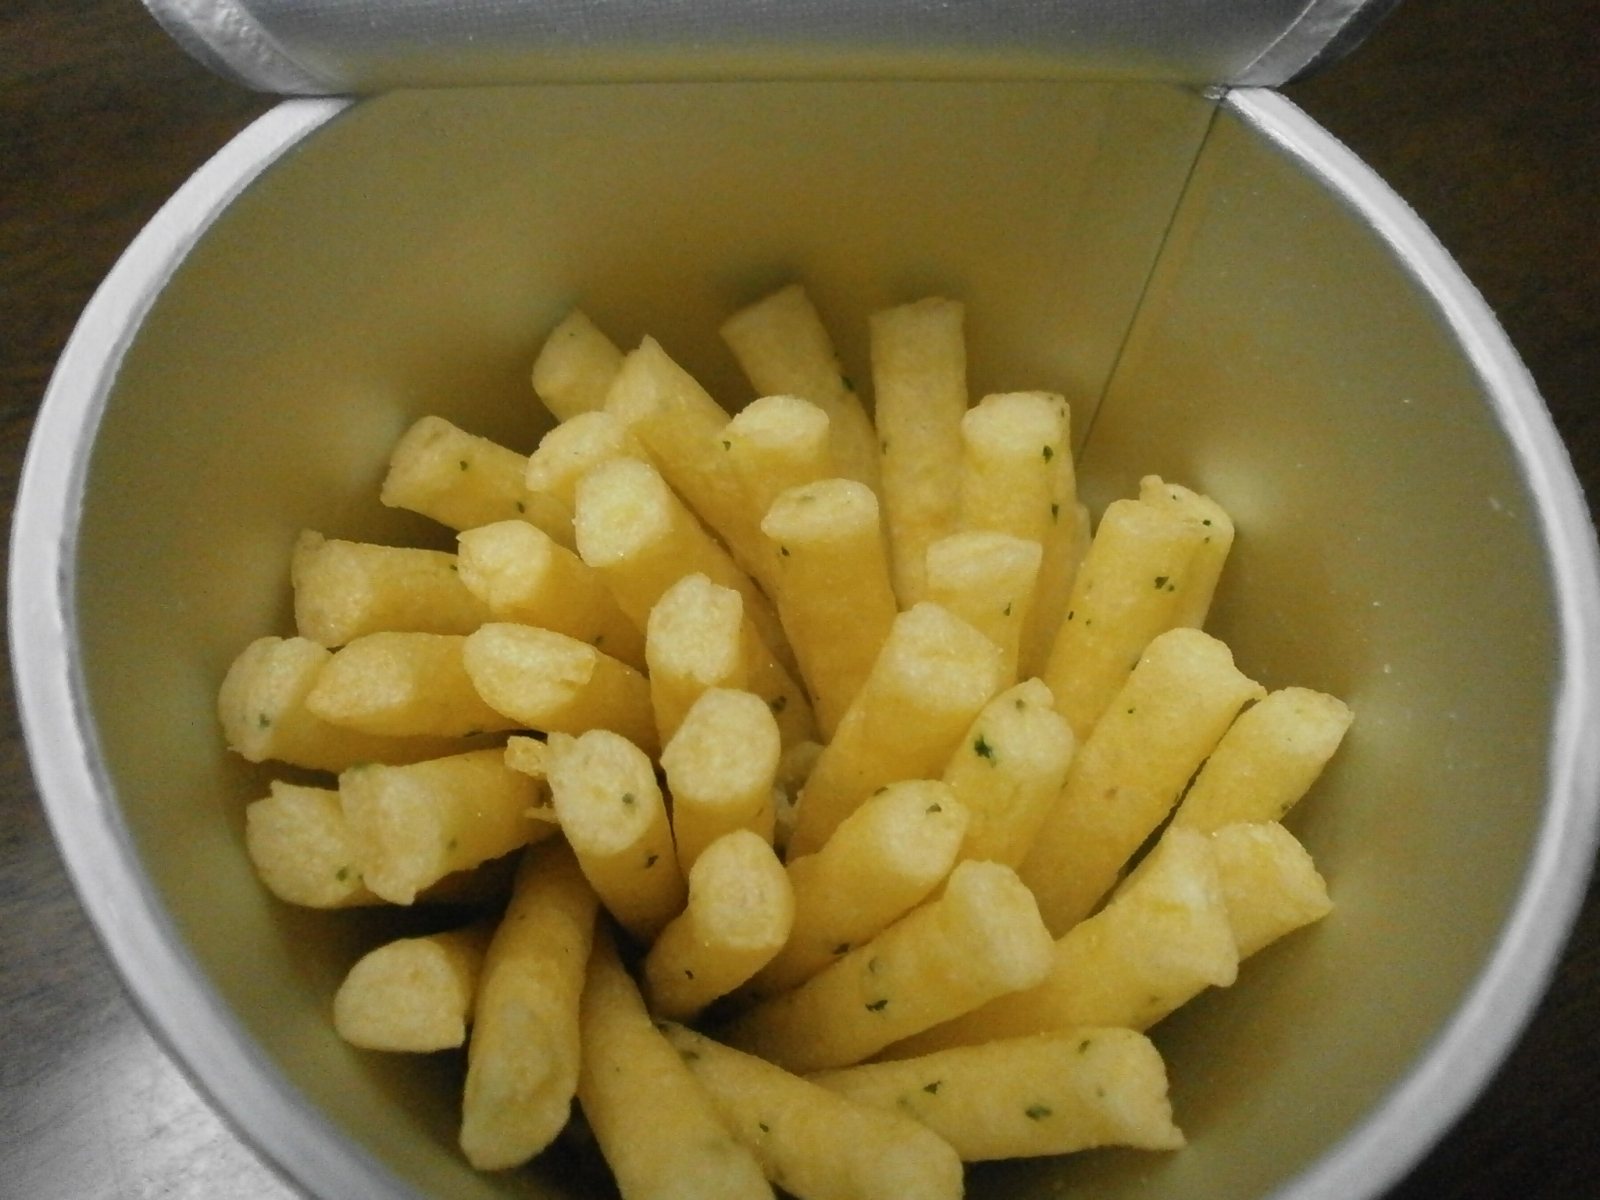 Les pommes de terre Riko (pommes de terre au beurre)